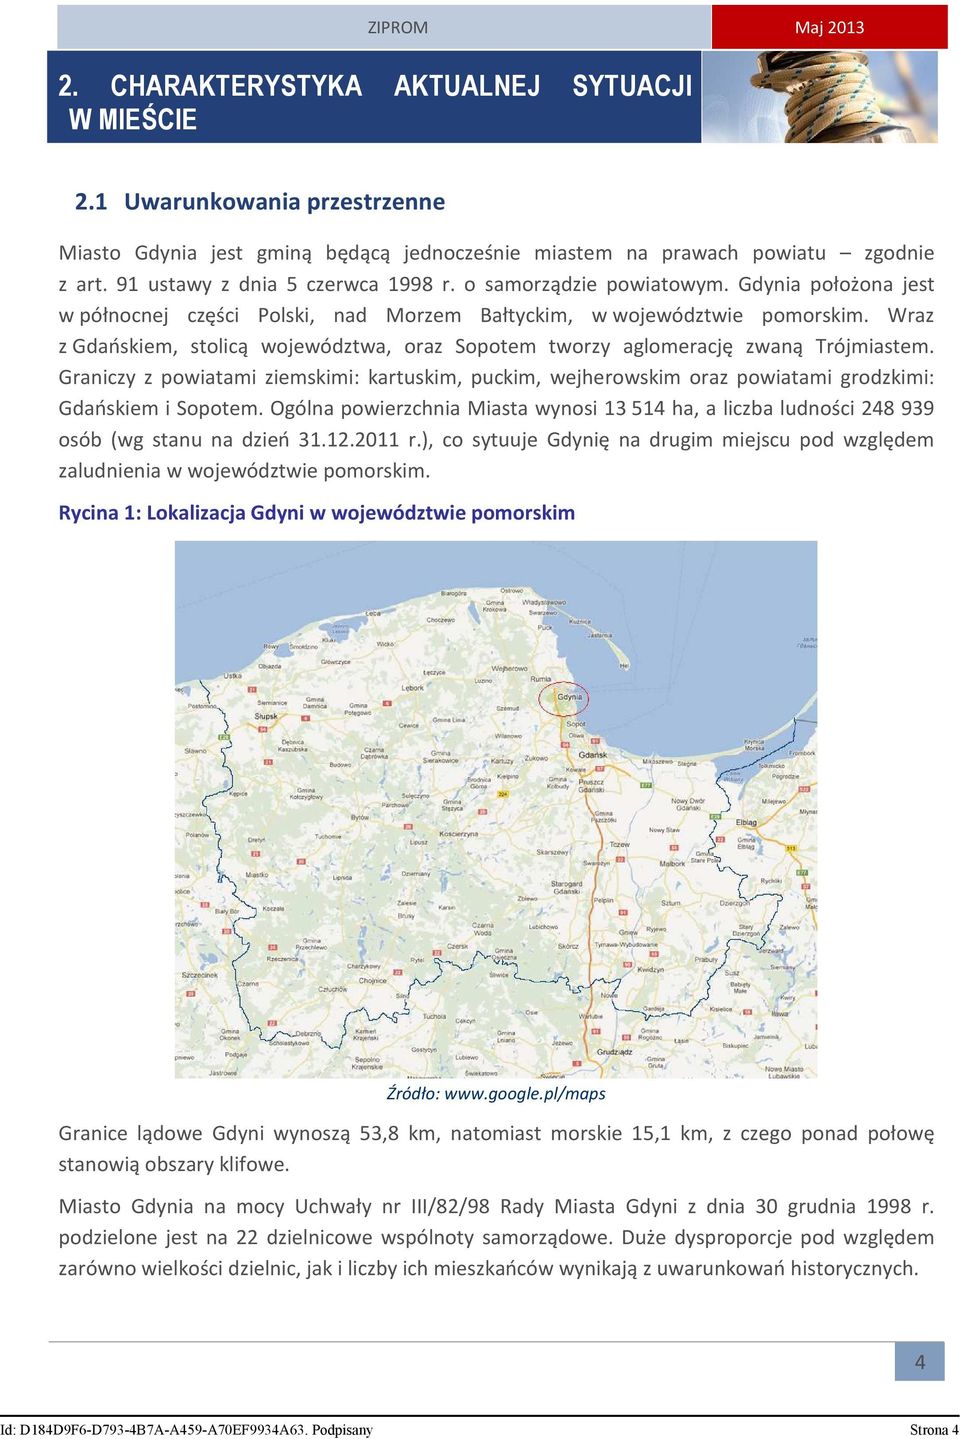 Wraz z Gdańskiem, stolicą województwa, oraz Sopotem tworzy aglomerację zwaną Trójmiastem. Graniczy z powiatami ziemskimi: kartuskim, puckim, wejherowskim oraz powiatami grodzkimi: Gdańskiem i Sopotem.